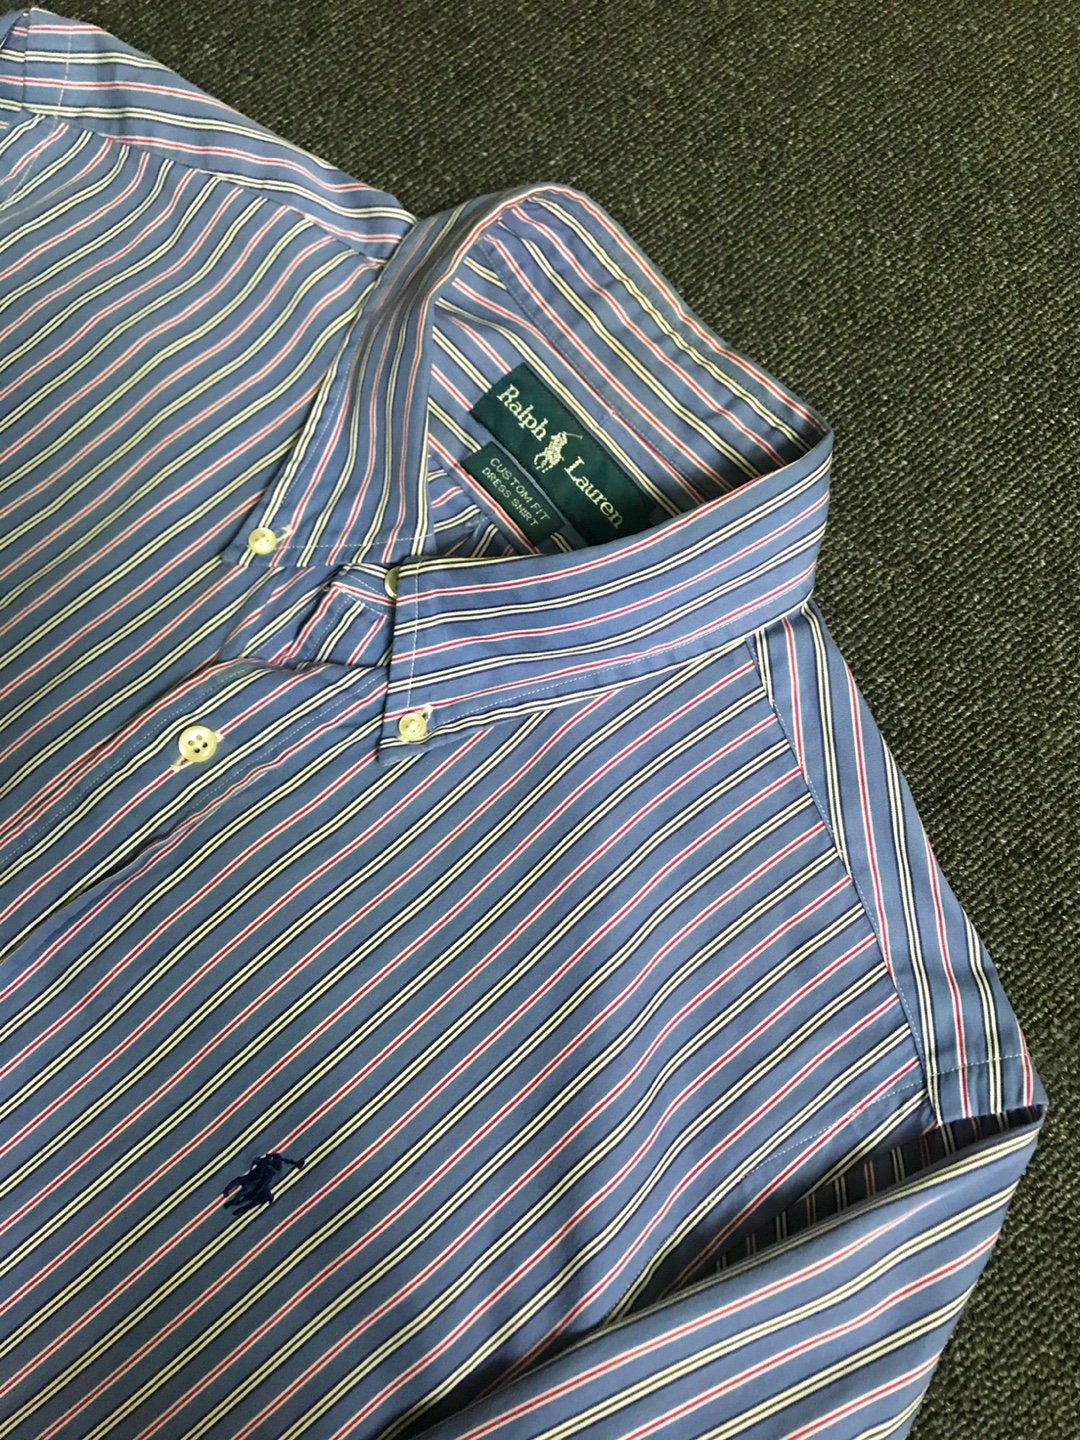 Polo RL cotton stripe dress bd shirt (43 size, ~103 추천)